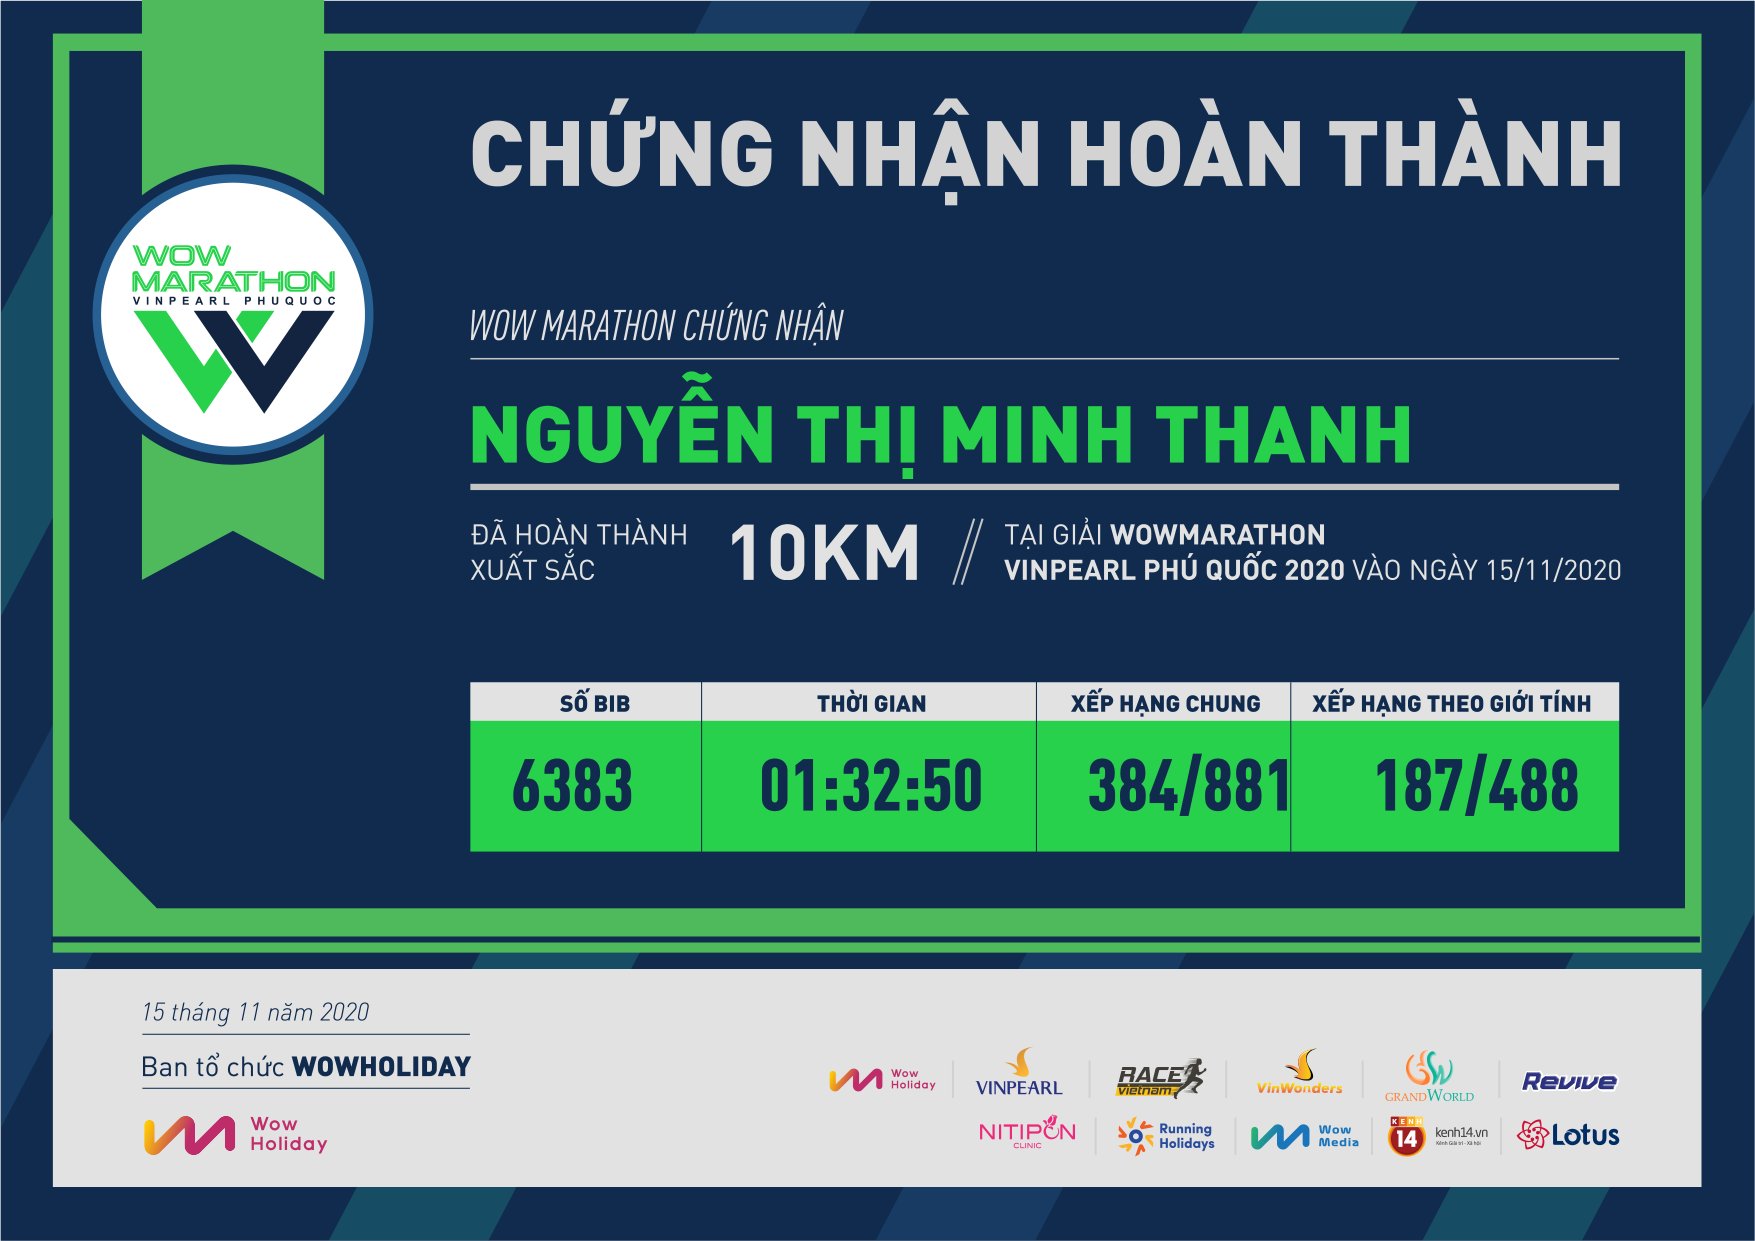 6383 - Nguyễn Thị Minh Thanh